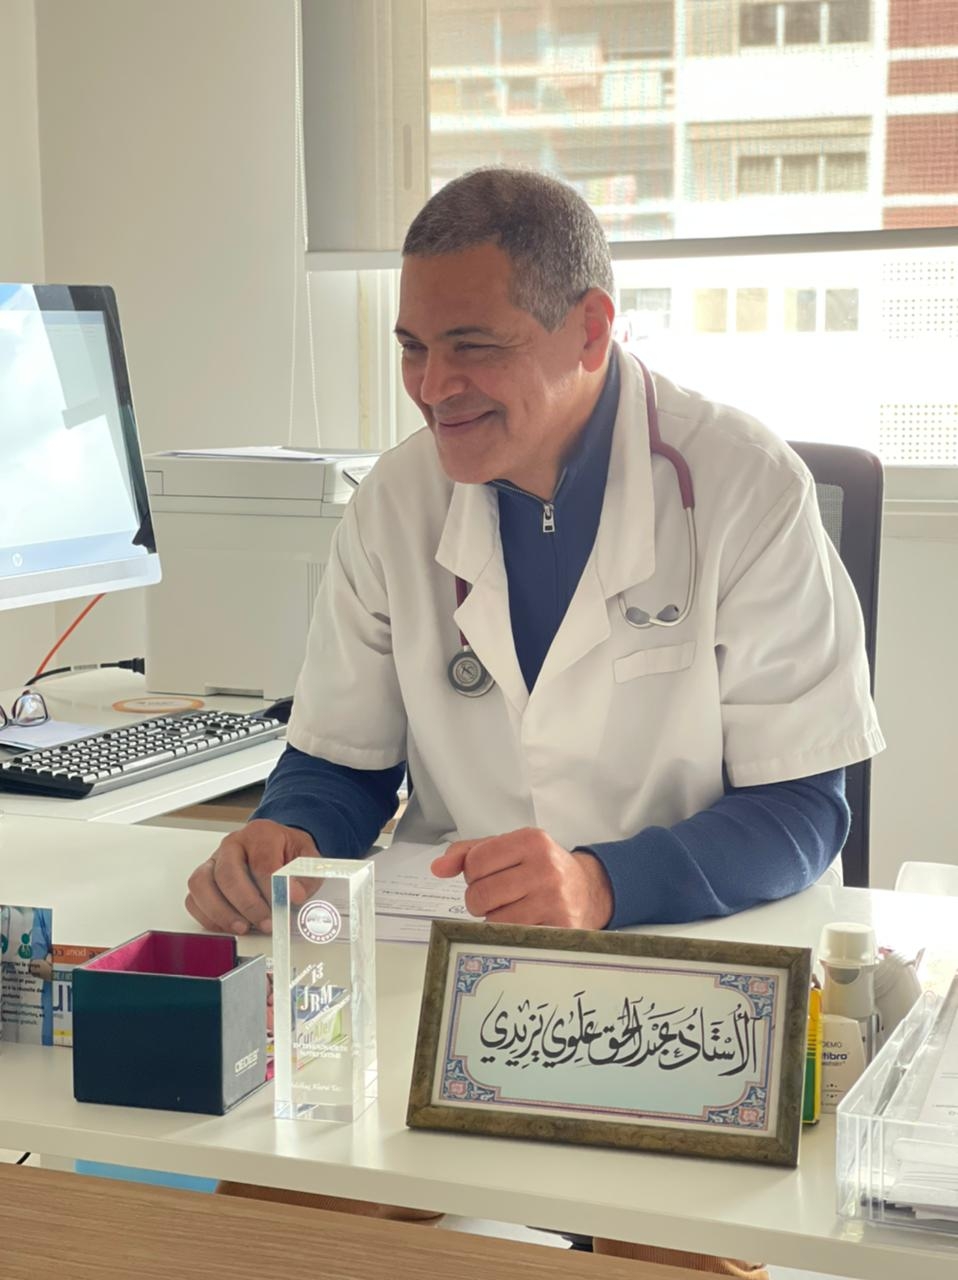 الأستاذ عبد الحق  العلوي يزيد  أخصائي الأمراض الرئوية